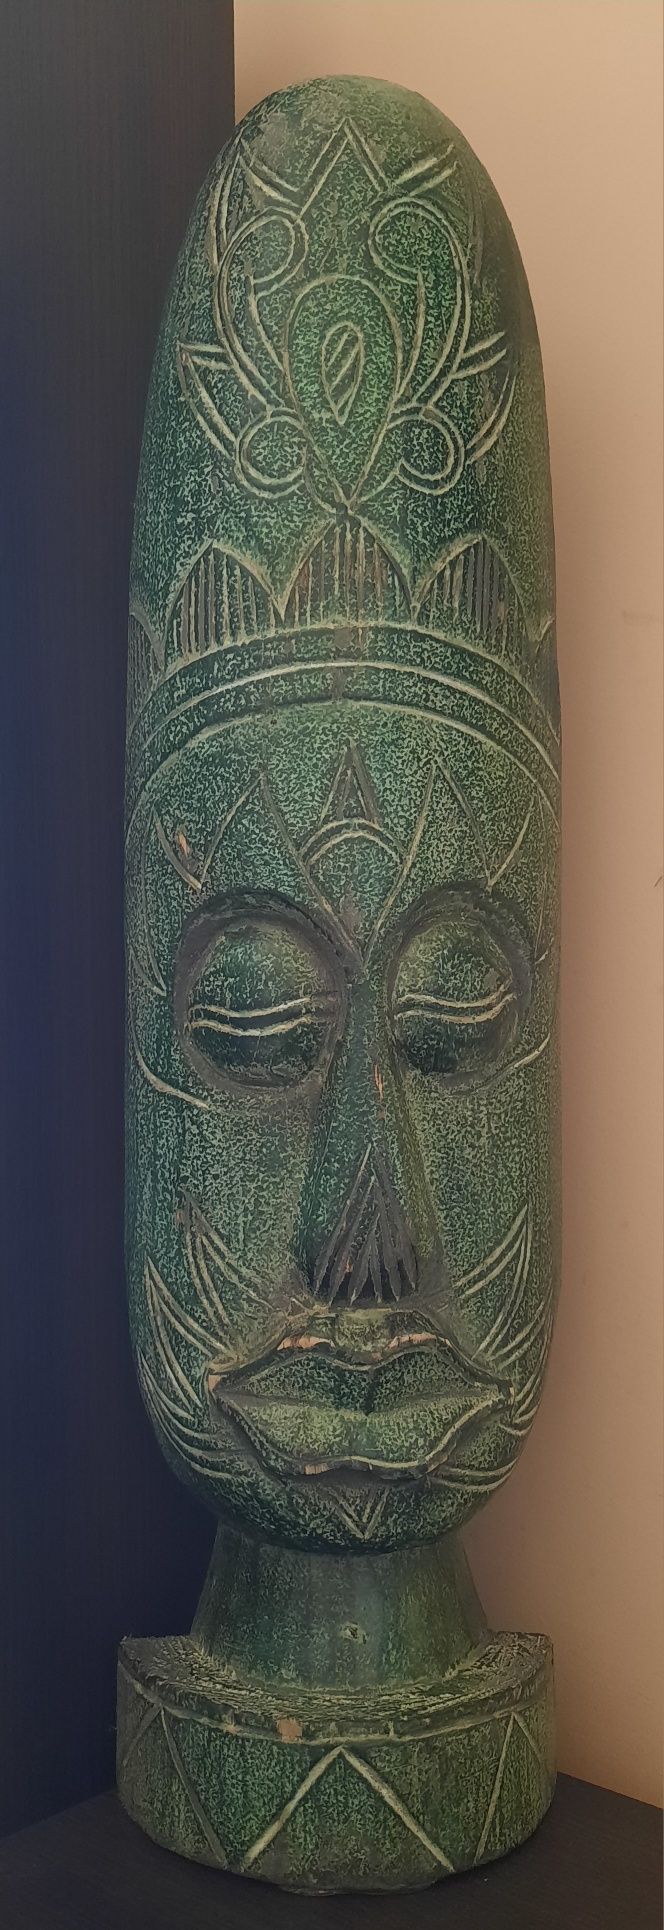 Maska afrykańska, stojąca, zielona